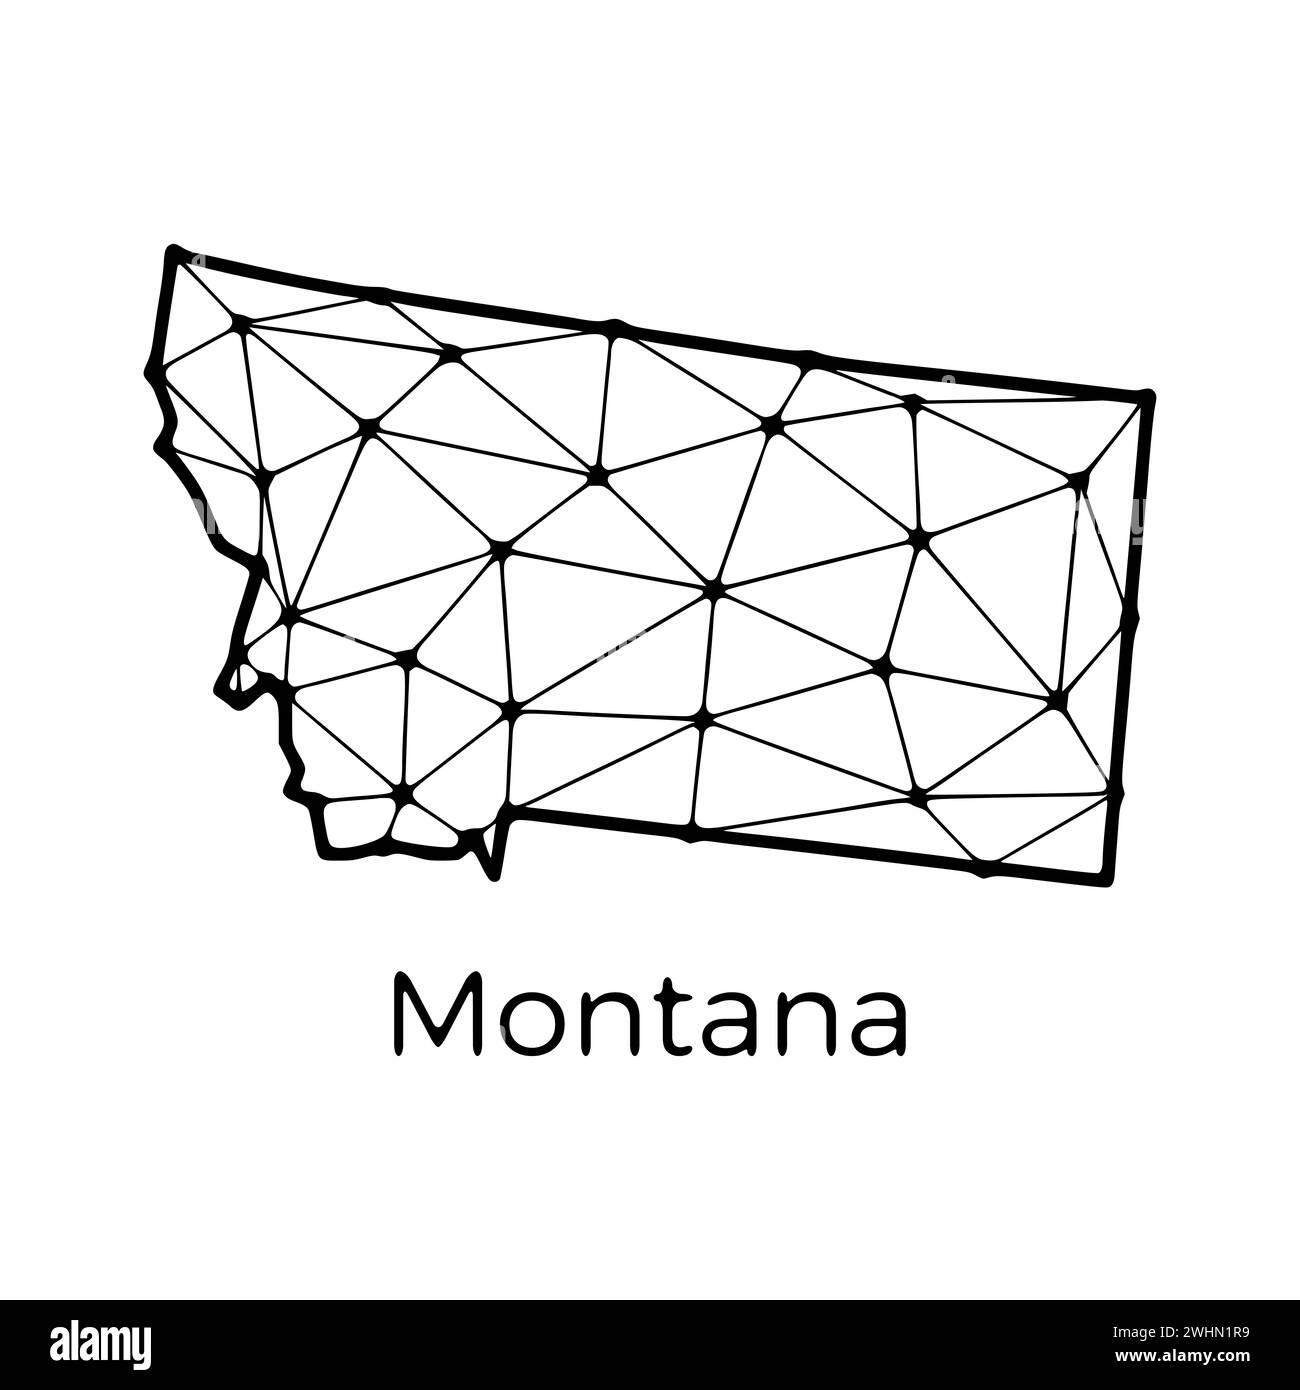 Montana State Map polygonale Darstellung aus Linien und Punkten, isoliert auf weißem Hintergrund. US-Bundesstaat mit niedrigem Poly-Design Stockfoto